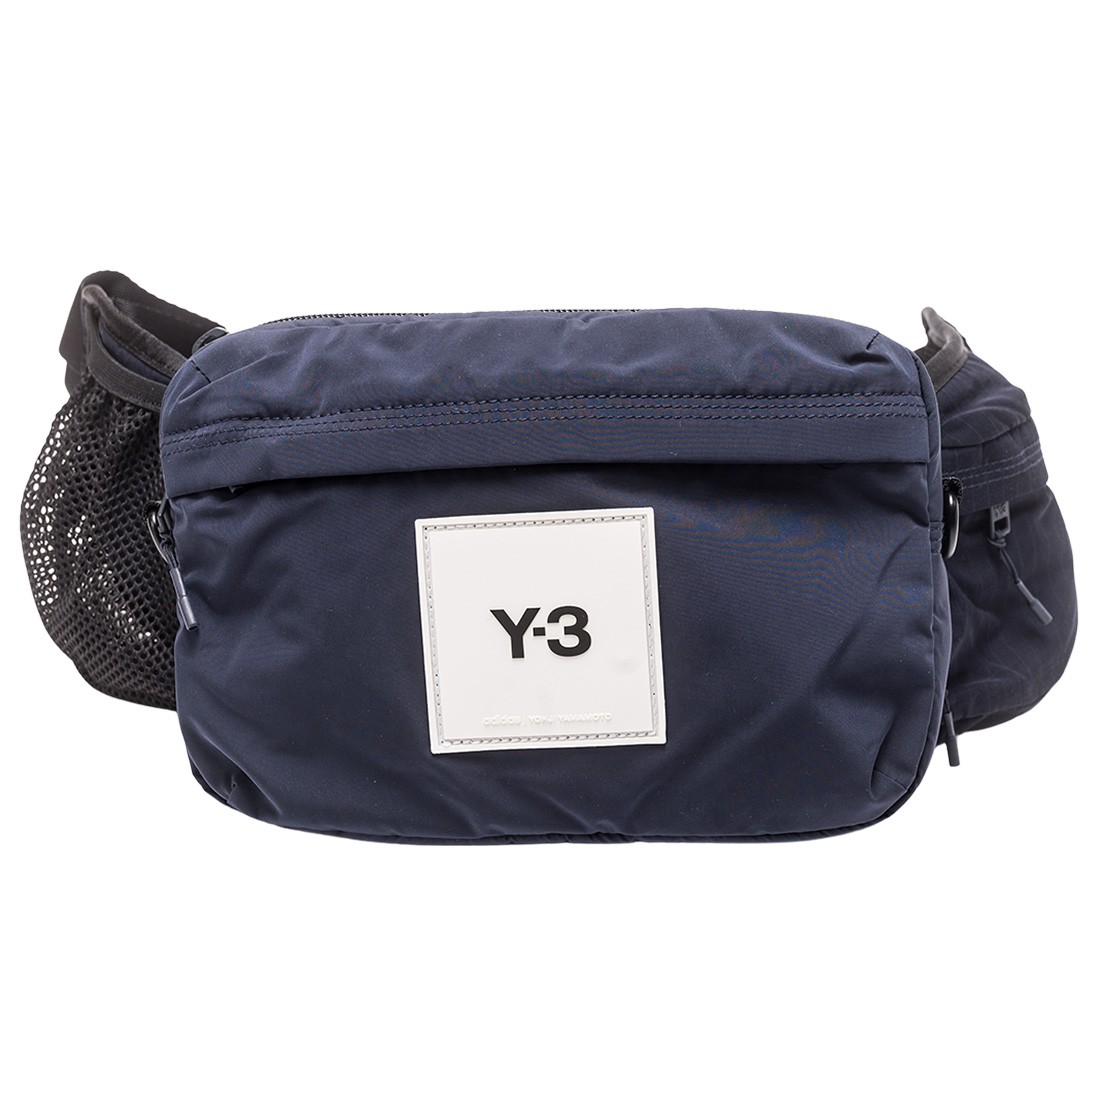 Y-3, Bags